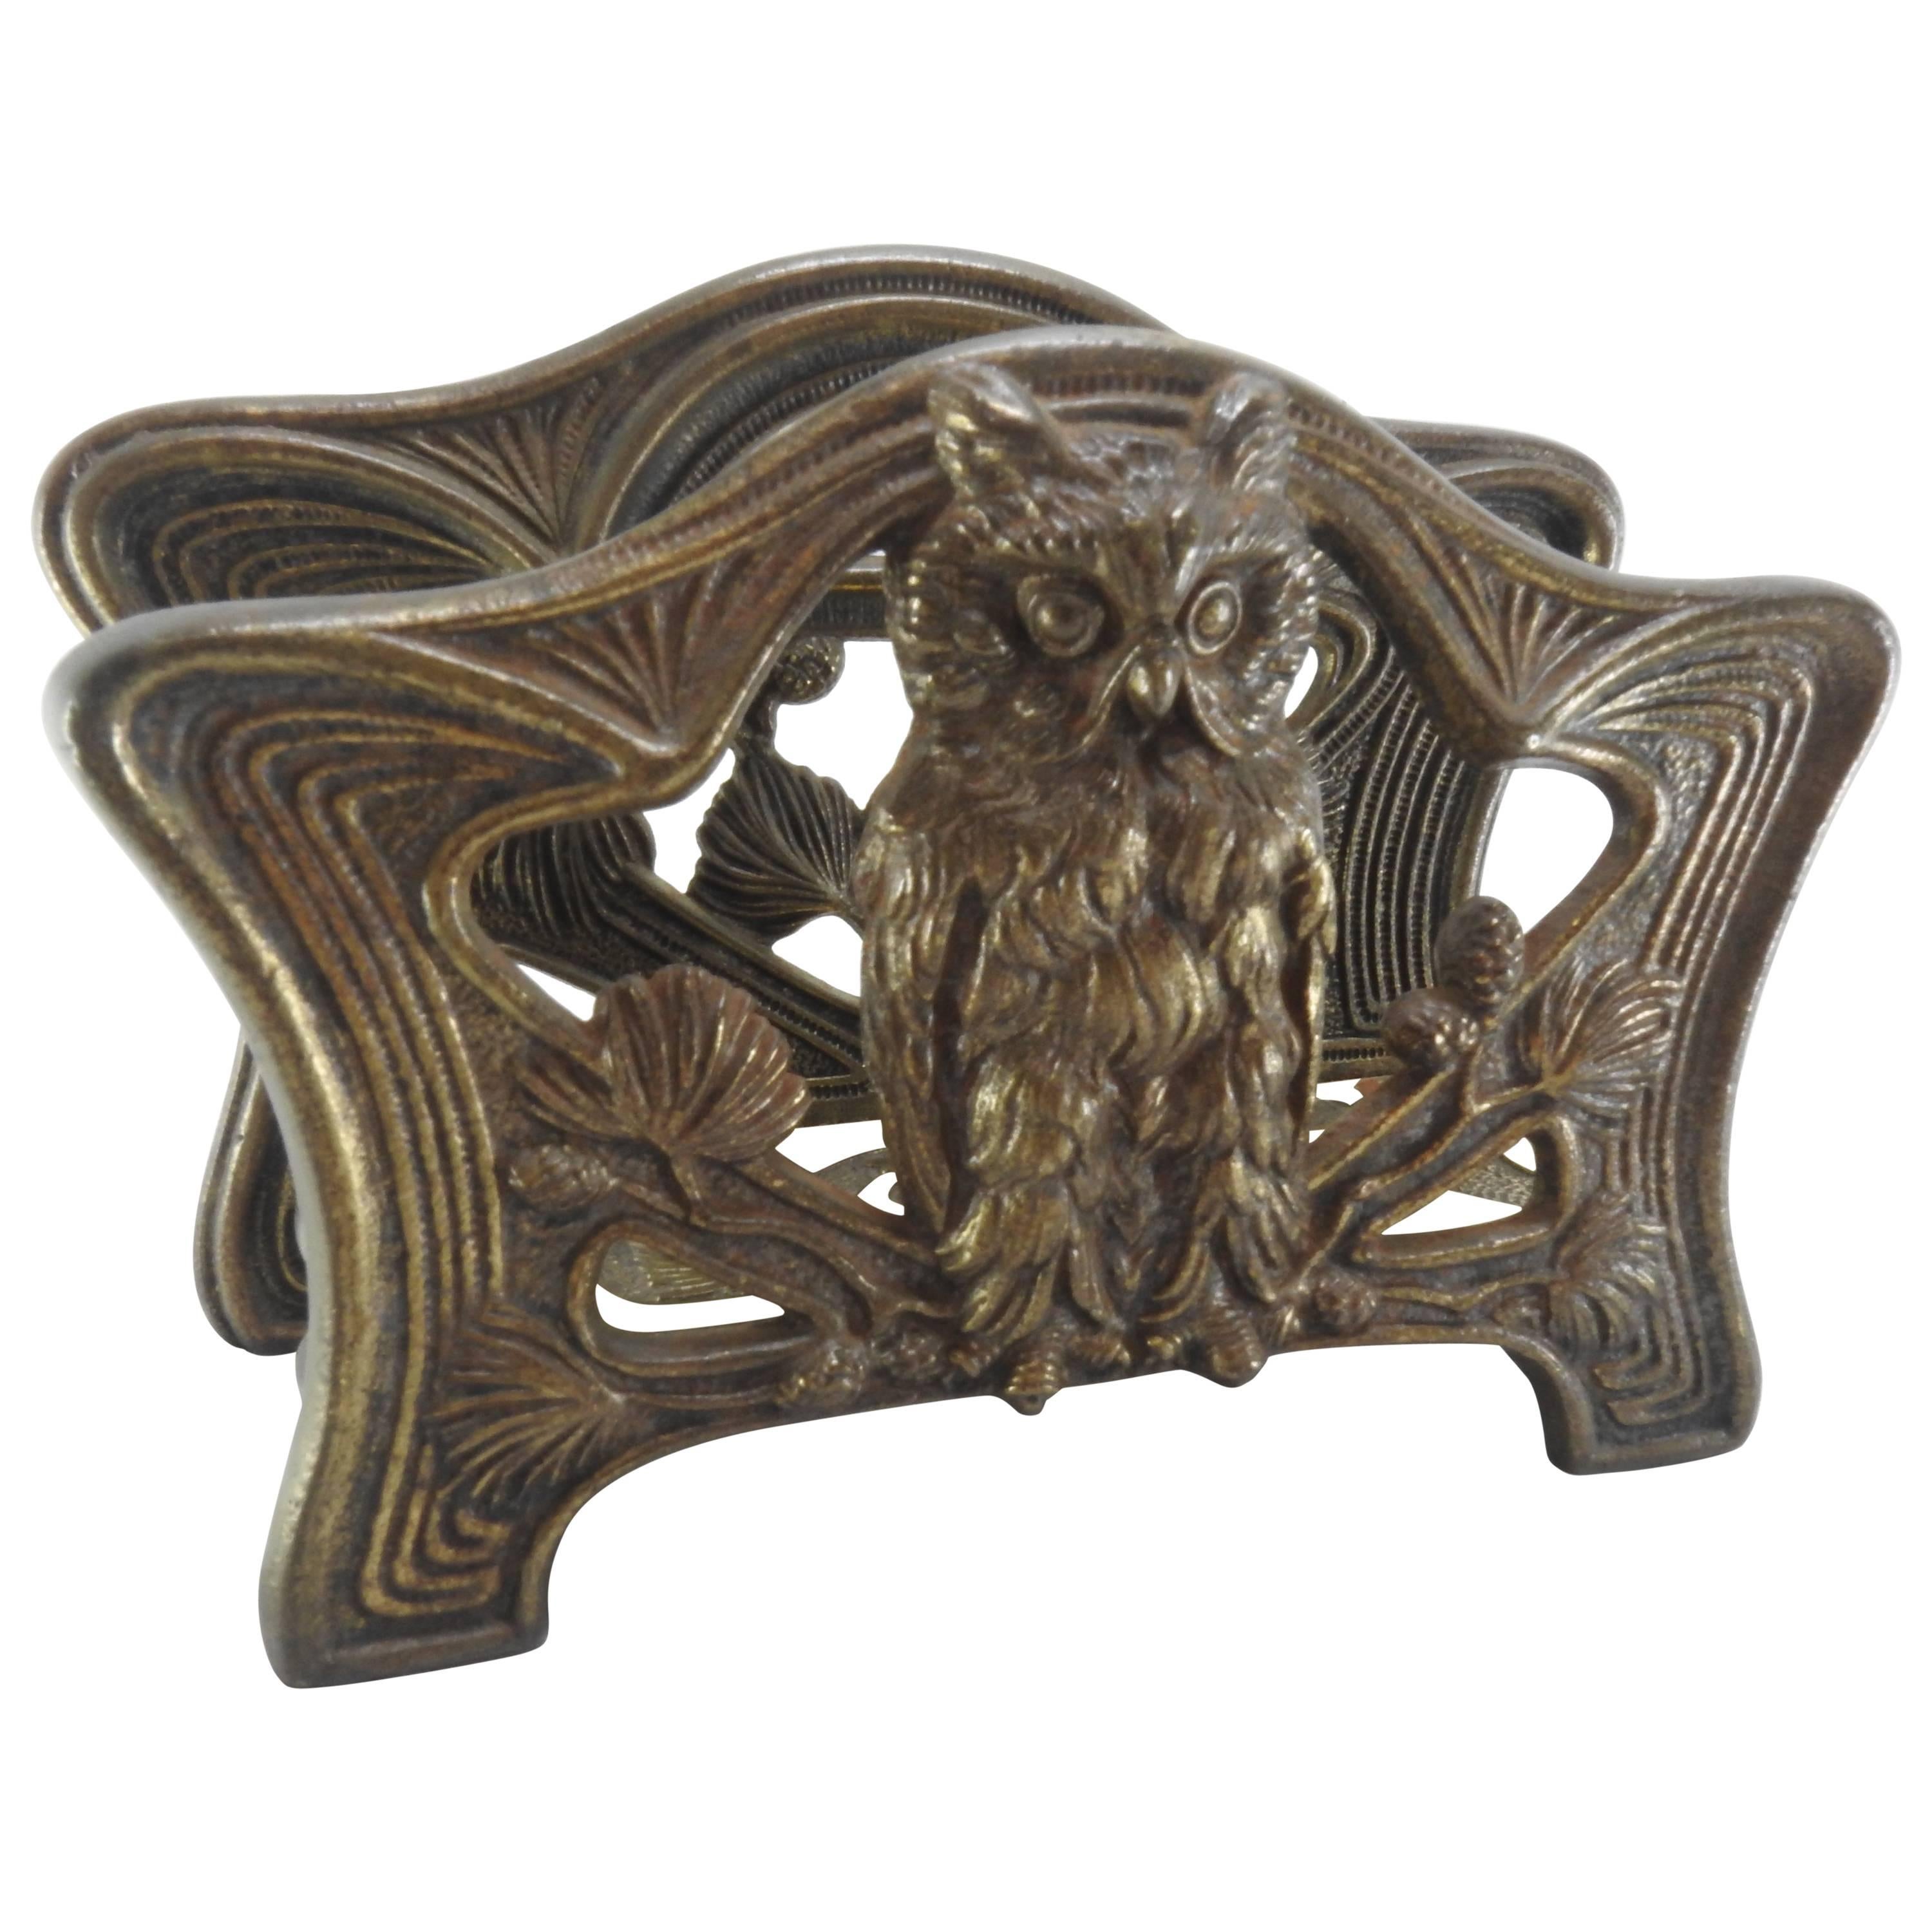 Art Nouveau Owl Letter Napkin Holder by H. L. Judd Co